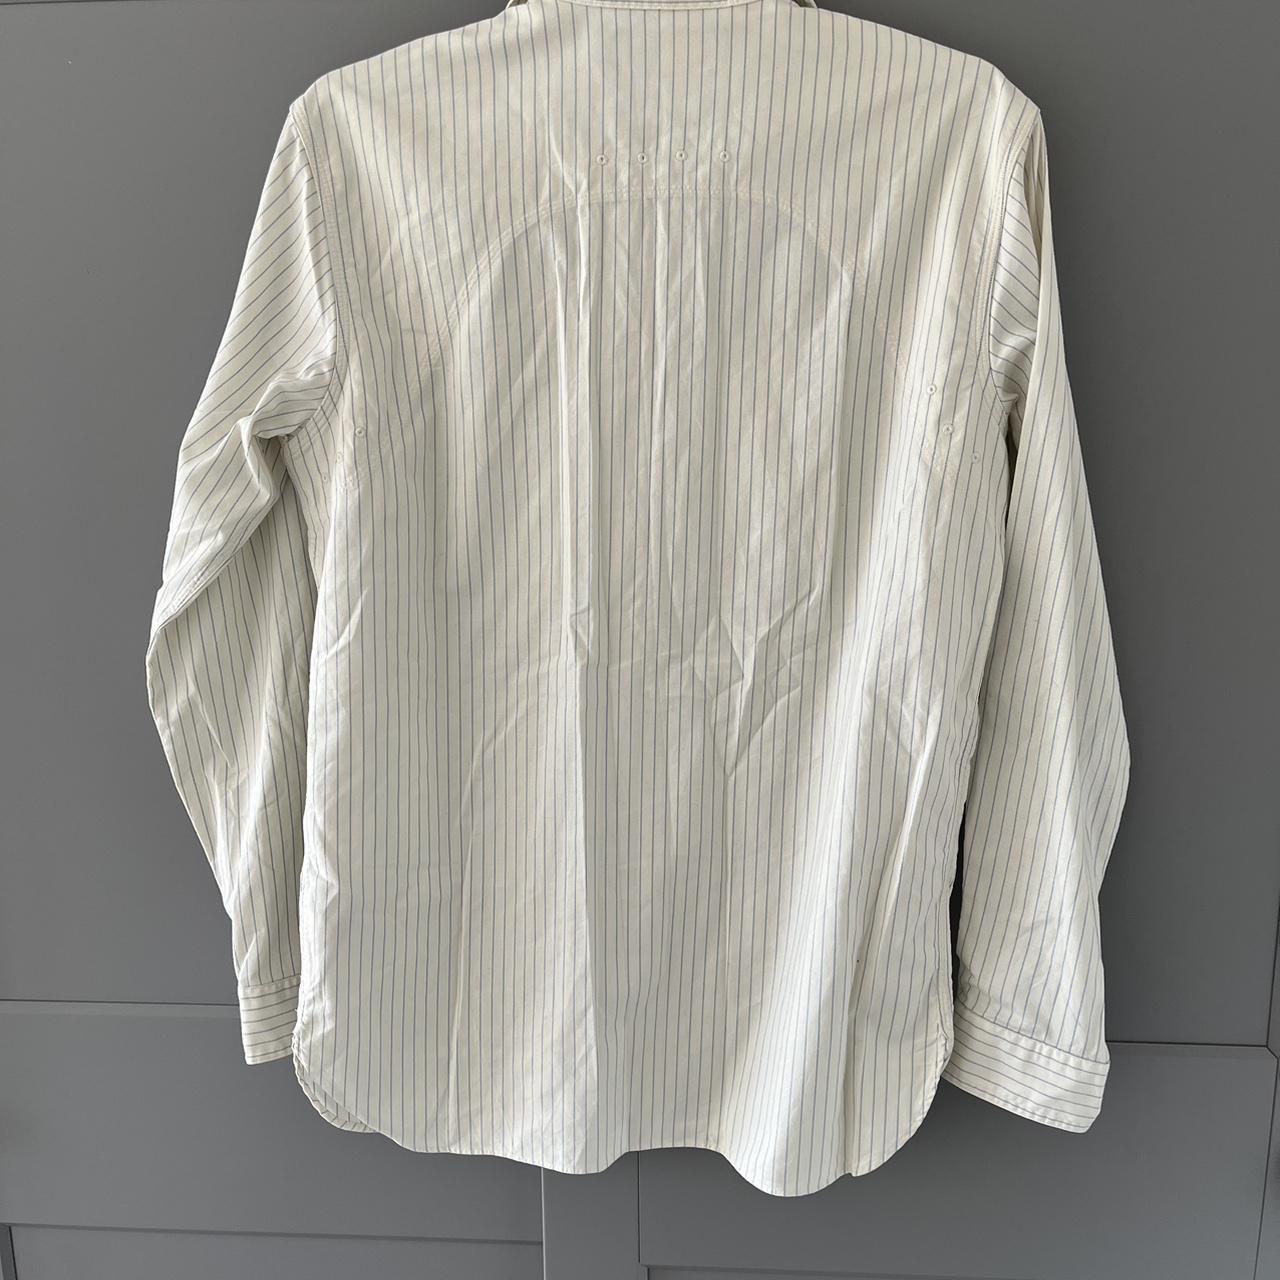 Ralph Lauren wide stripe sailing style shirt, never... - Depop